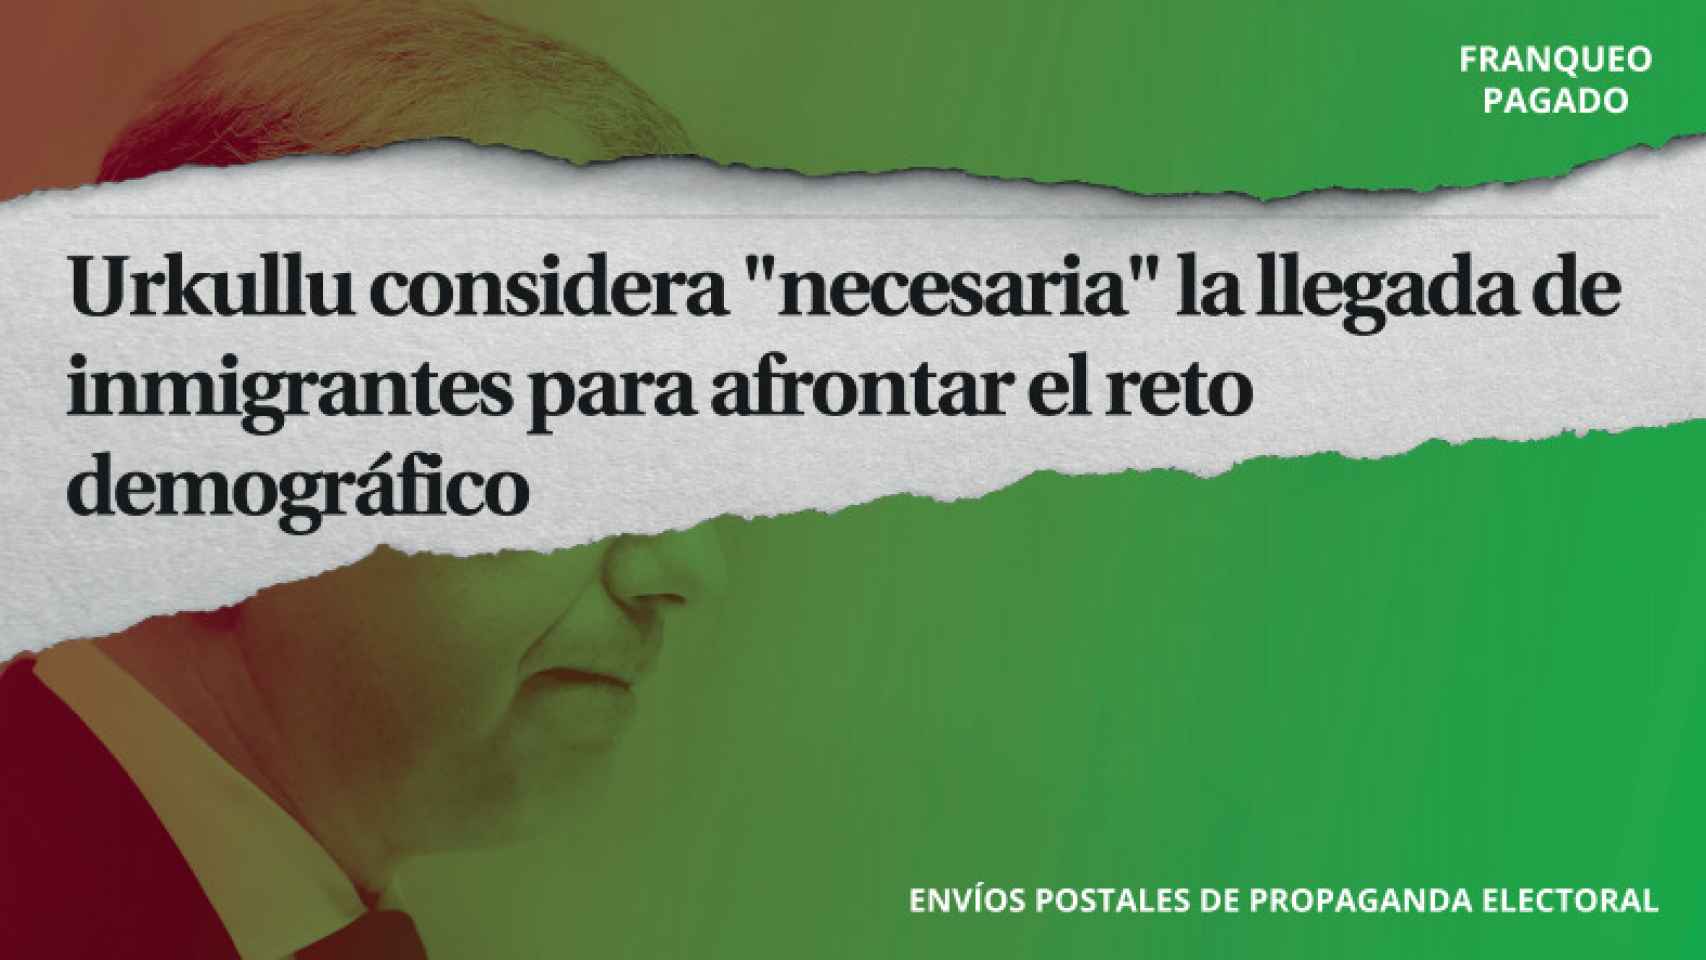 Contenido de los sobres electorales de Vox en el País Vasco retenidos por Correos.